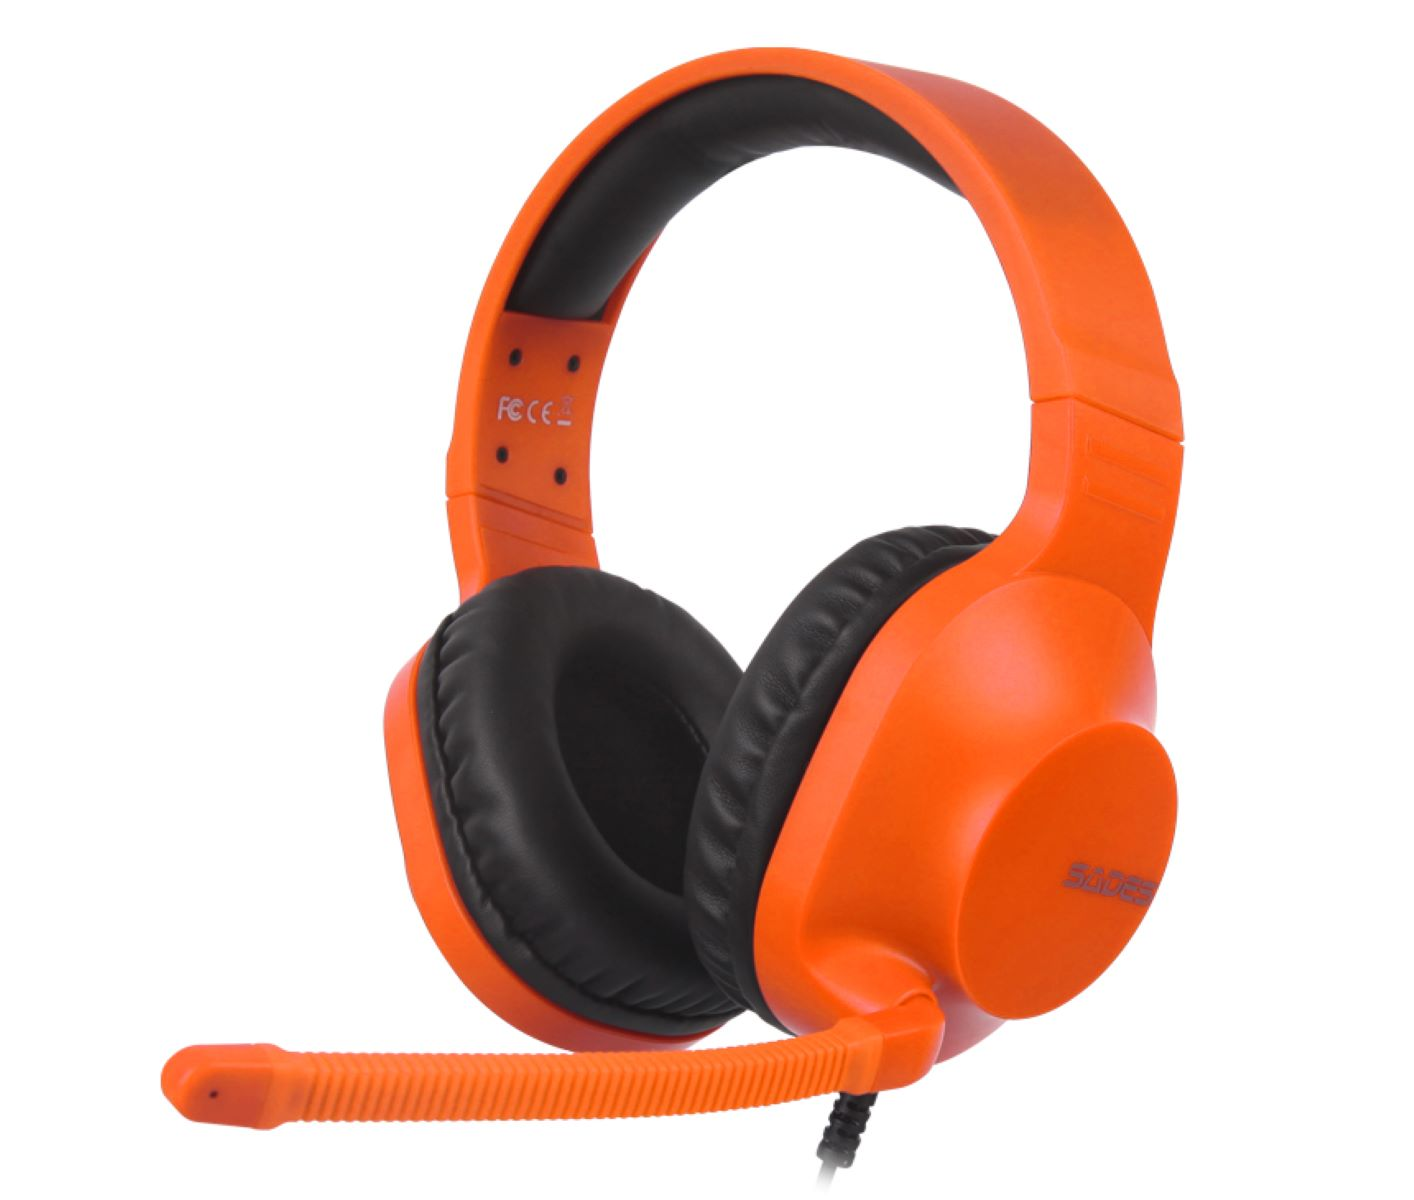 SADES Spirits Gaming Headset orange SA-721, Over-ear